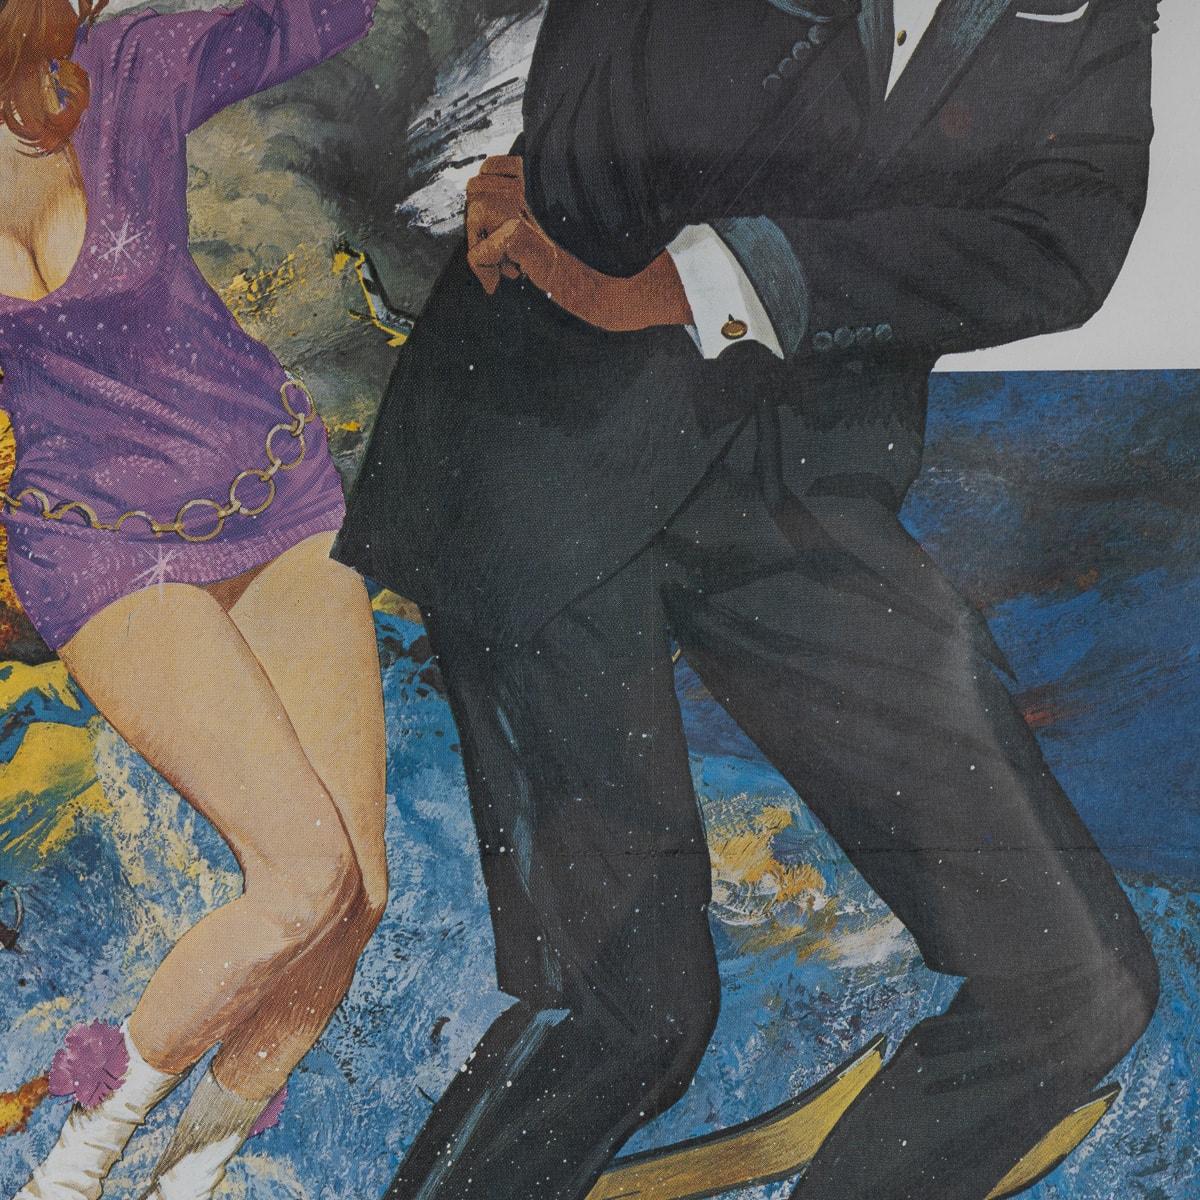 U.S Release James Bond 007 'On Her Majesty's Secret Service' Poster c.1969 For Sale 1